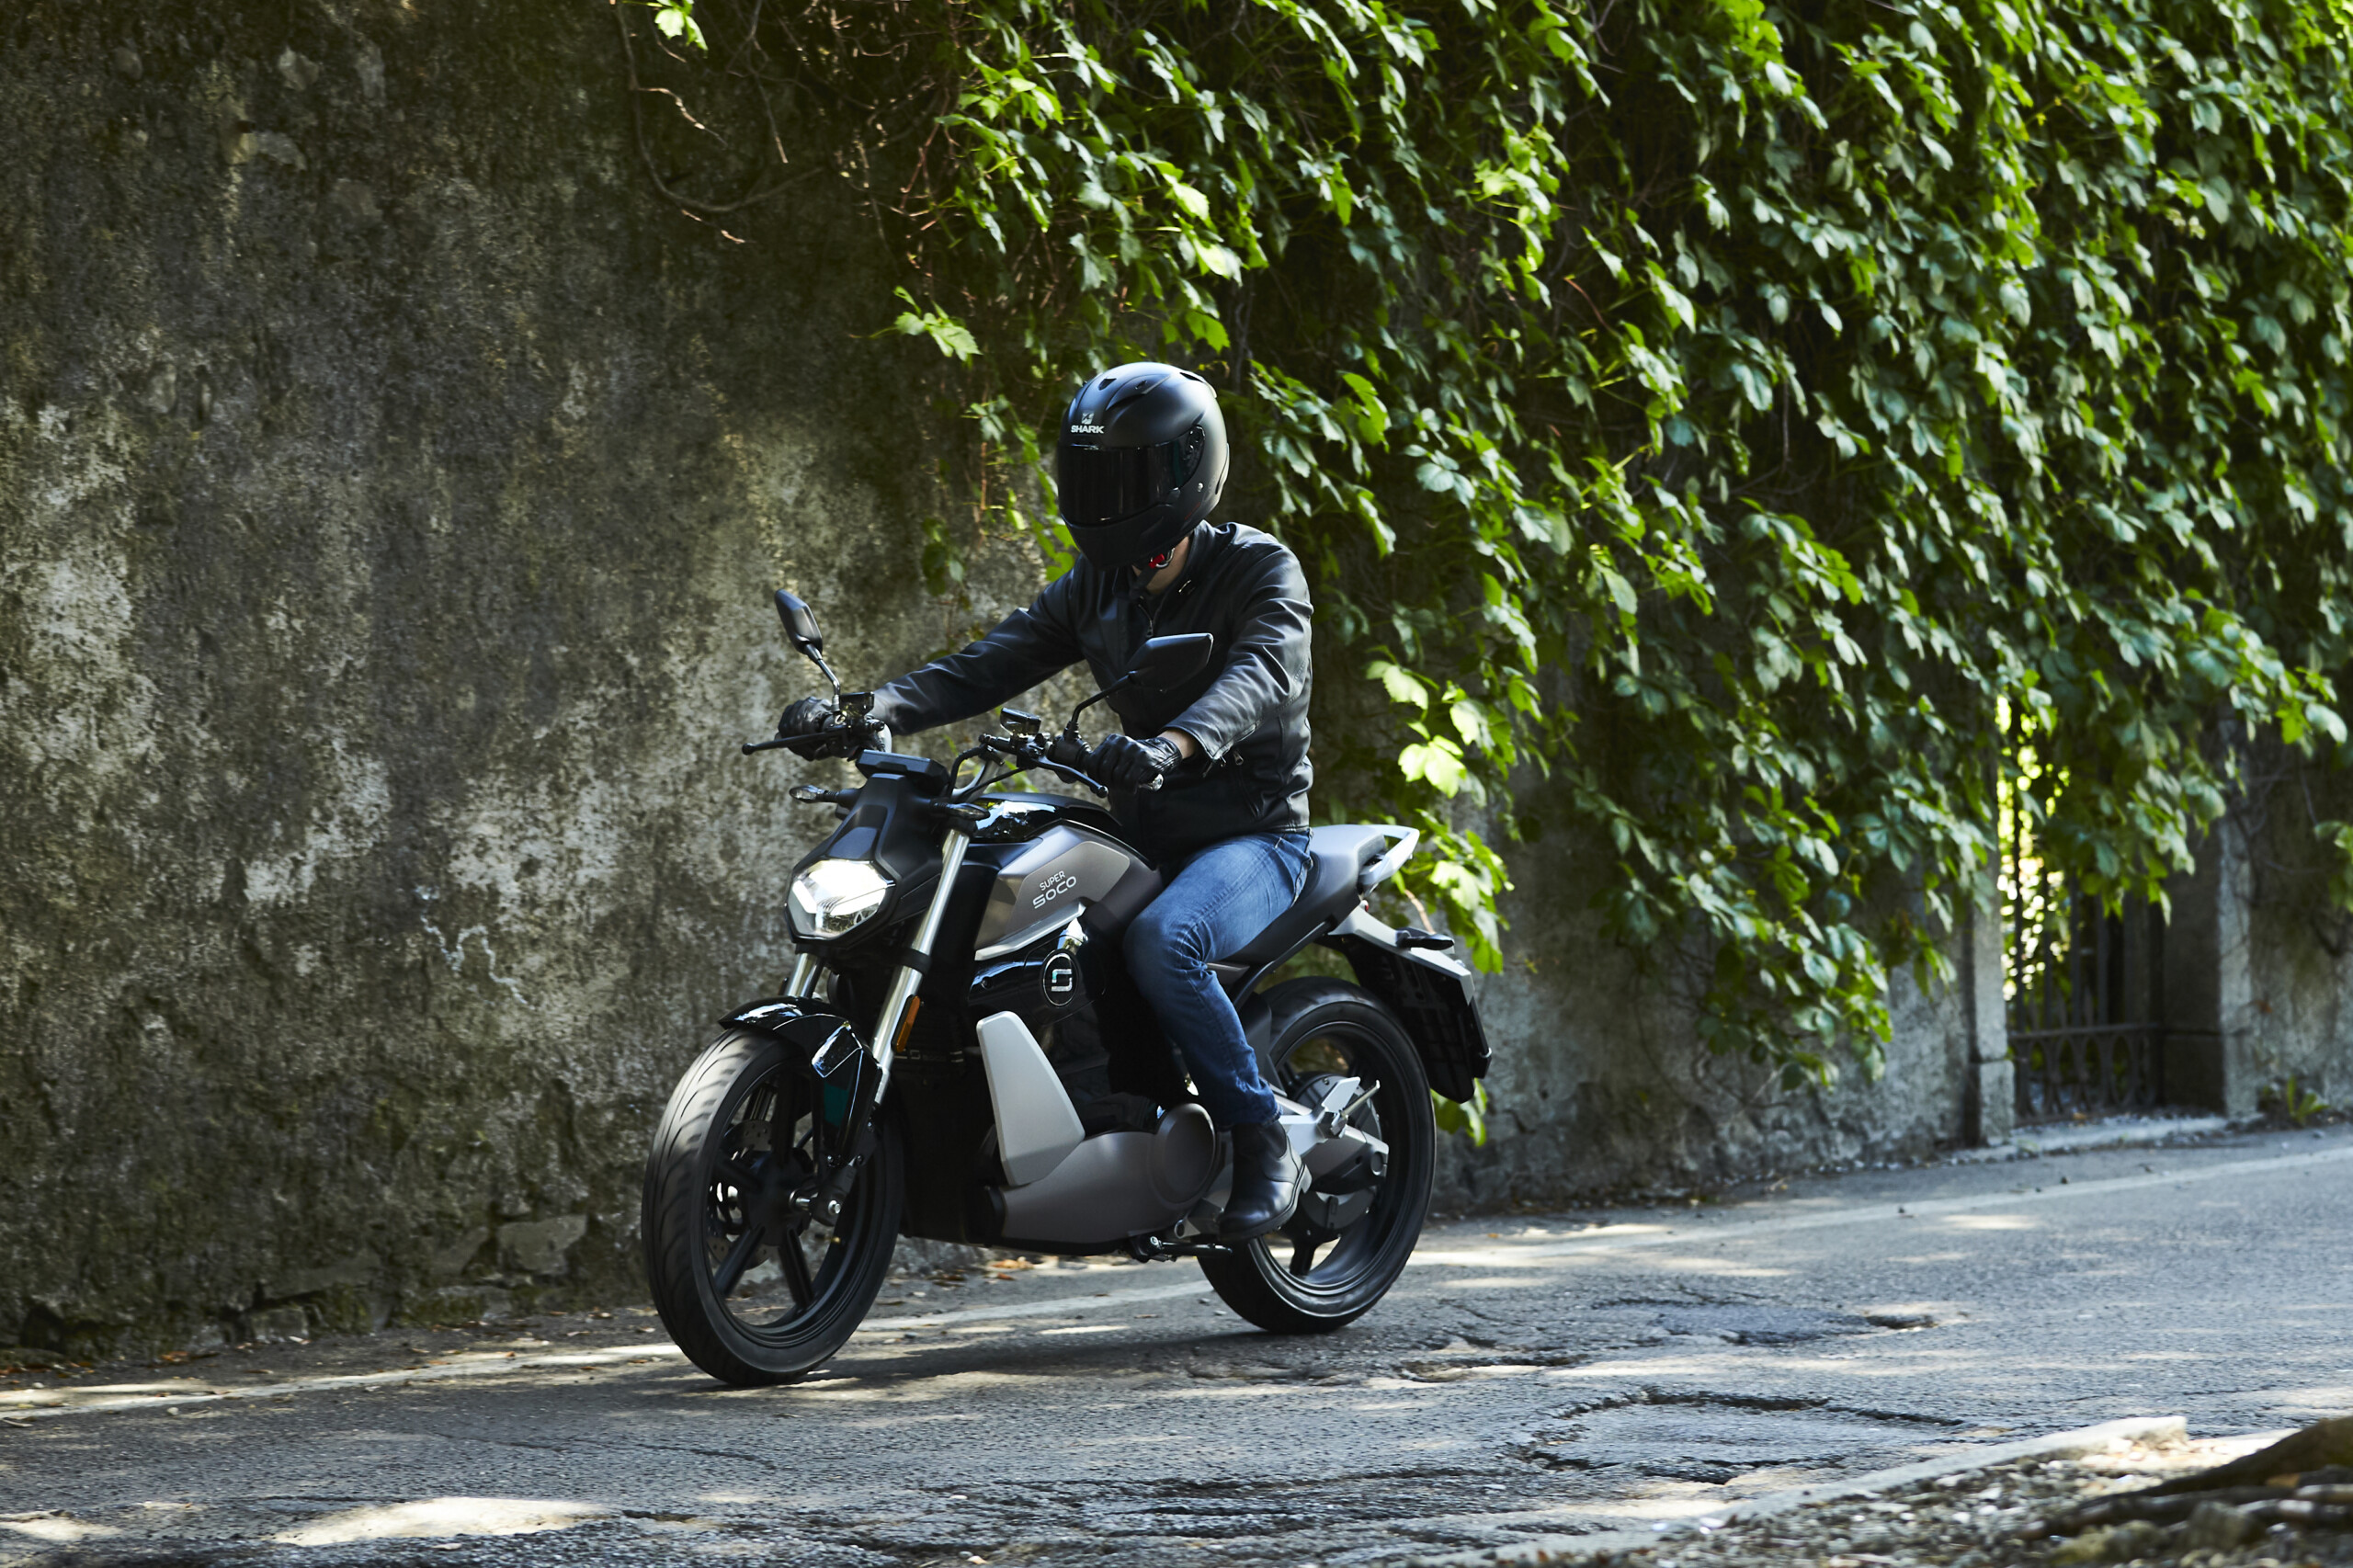 La moto électrique Verge TS sera disponible dès 2022